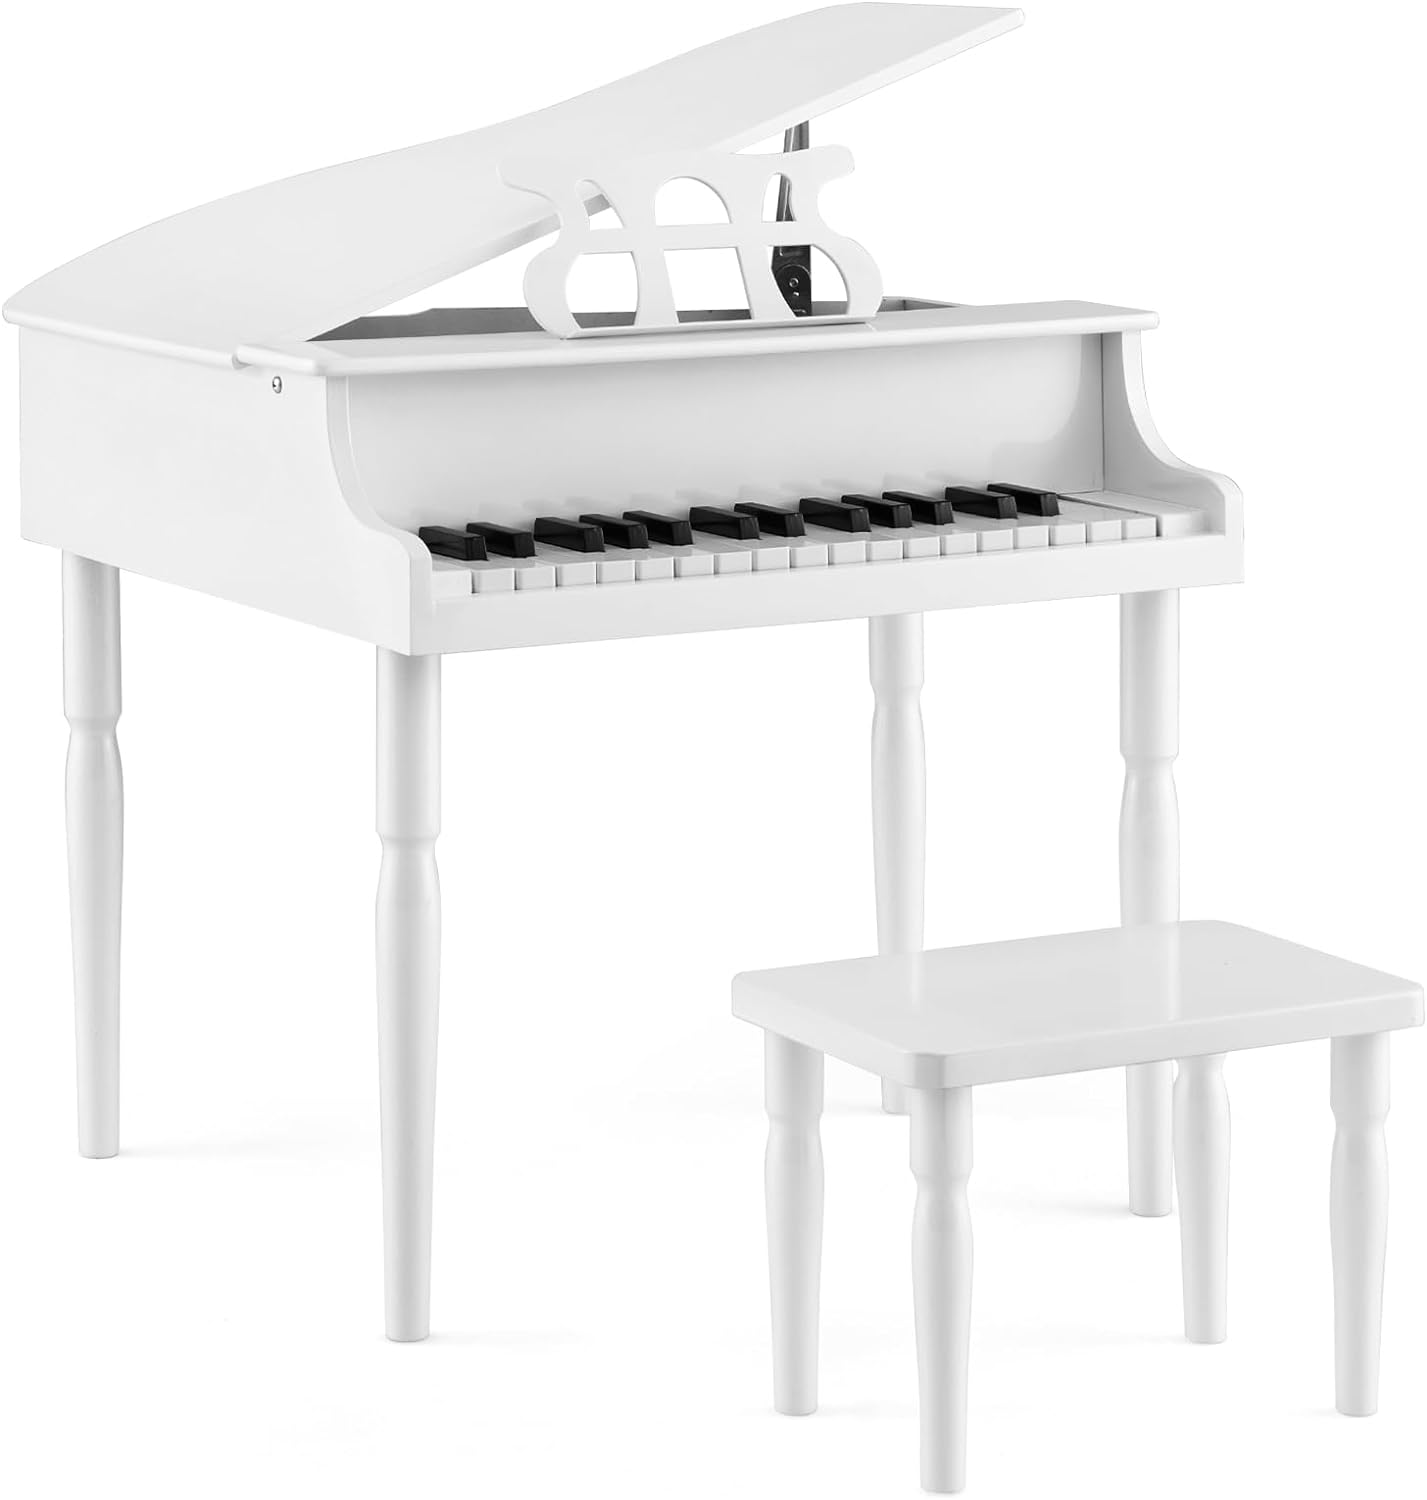 Piano Numérique 30 Touches pour Enfants avec Tabouret & Pupitre, Instrument  de Musique(Blanc)